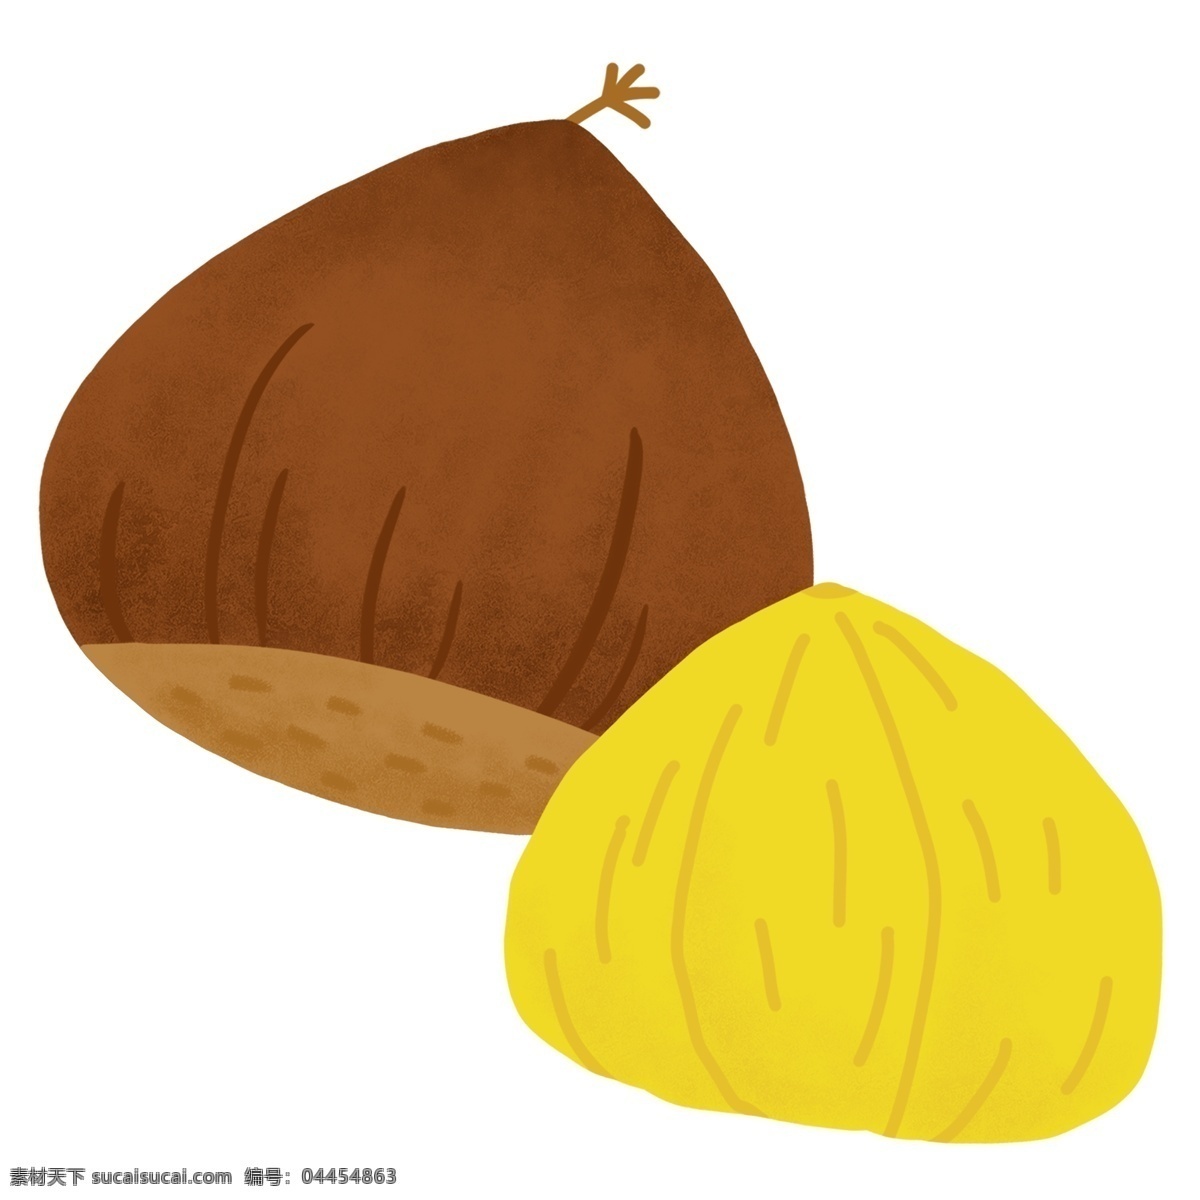 坚果 栗子 卡通 插画 栗子的坚果 卡通插画 坚果插画 零食坚果 坚果美食 办公小吃 美味的栗子